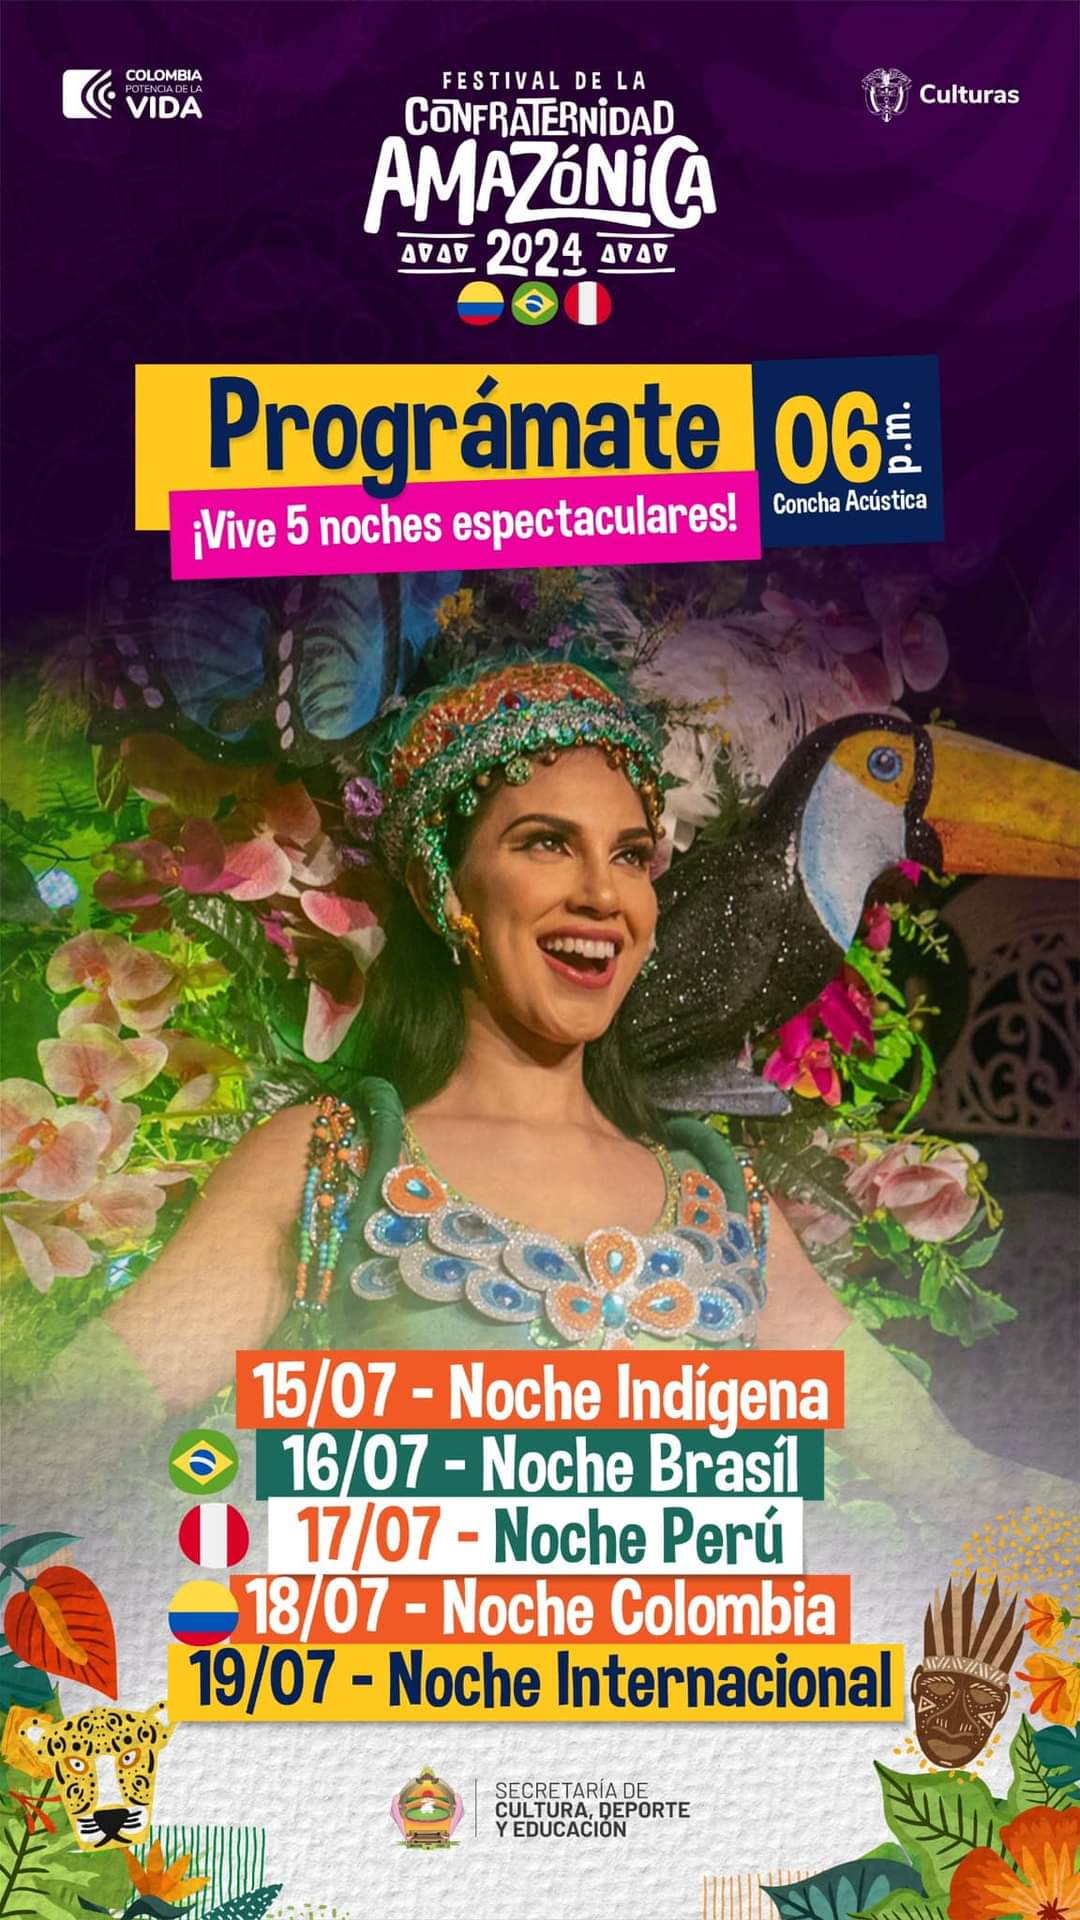 image for Festival de la confraternidad Amazónica 2024